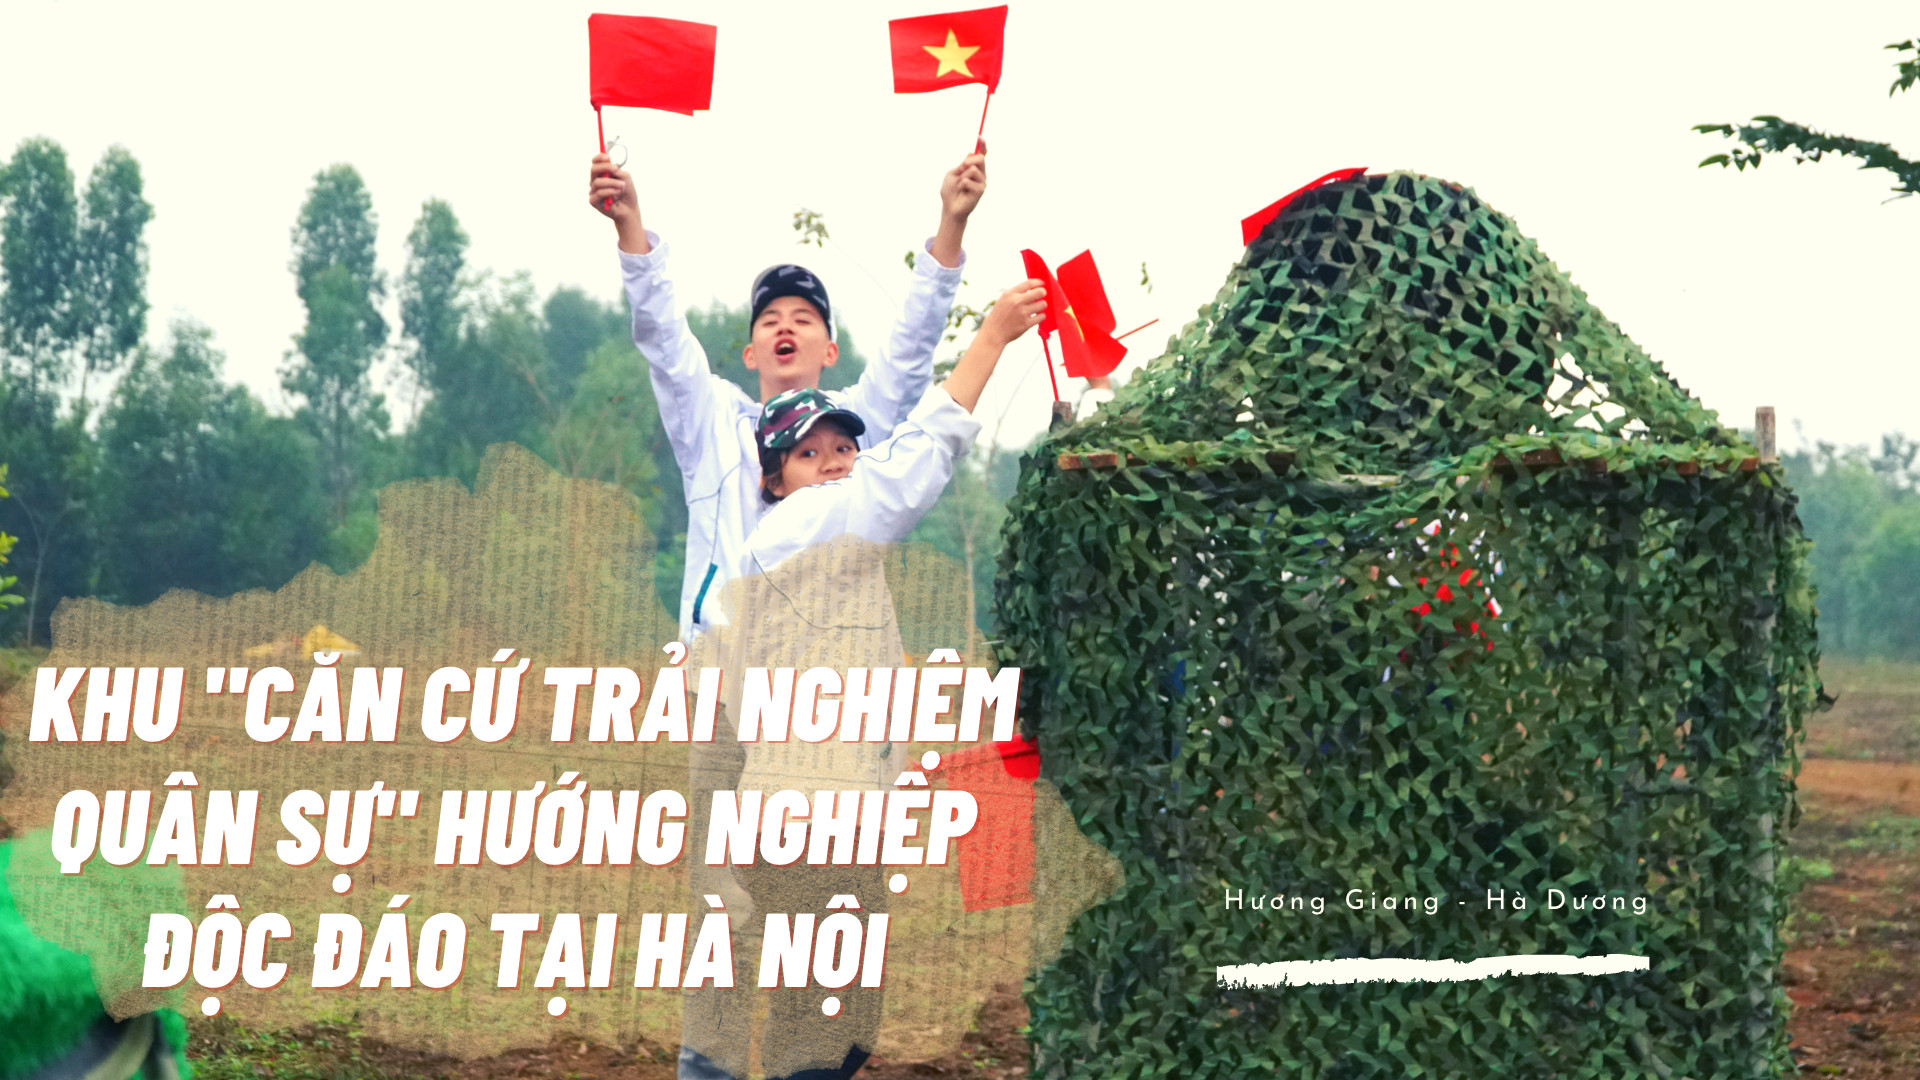 Độc đáo khu 'căn cứ trải nghiệm quân sự' hướng nghiệp tại Hà Nội